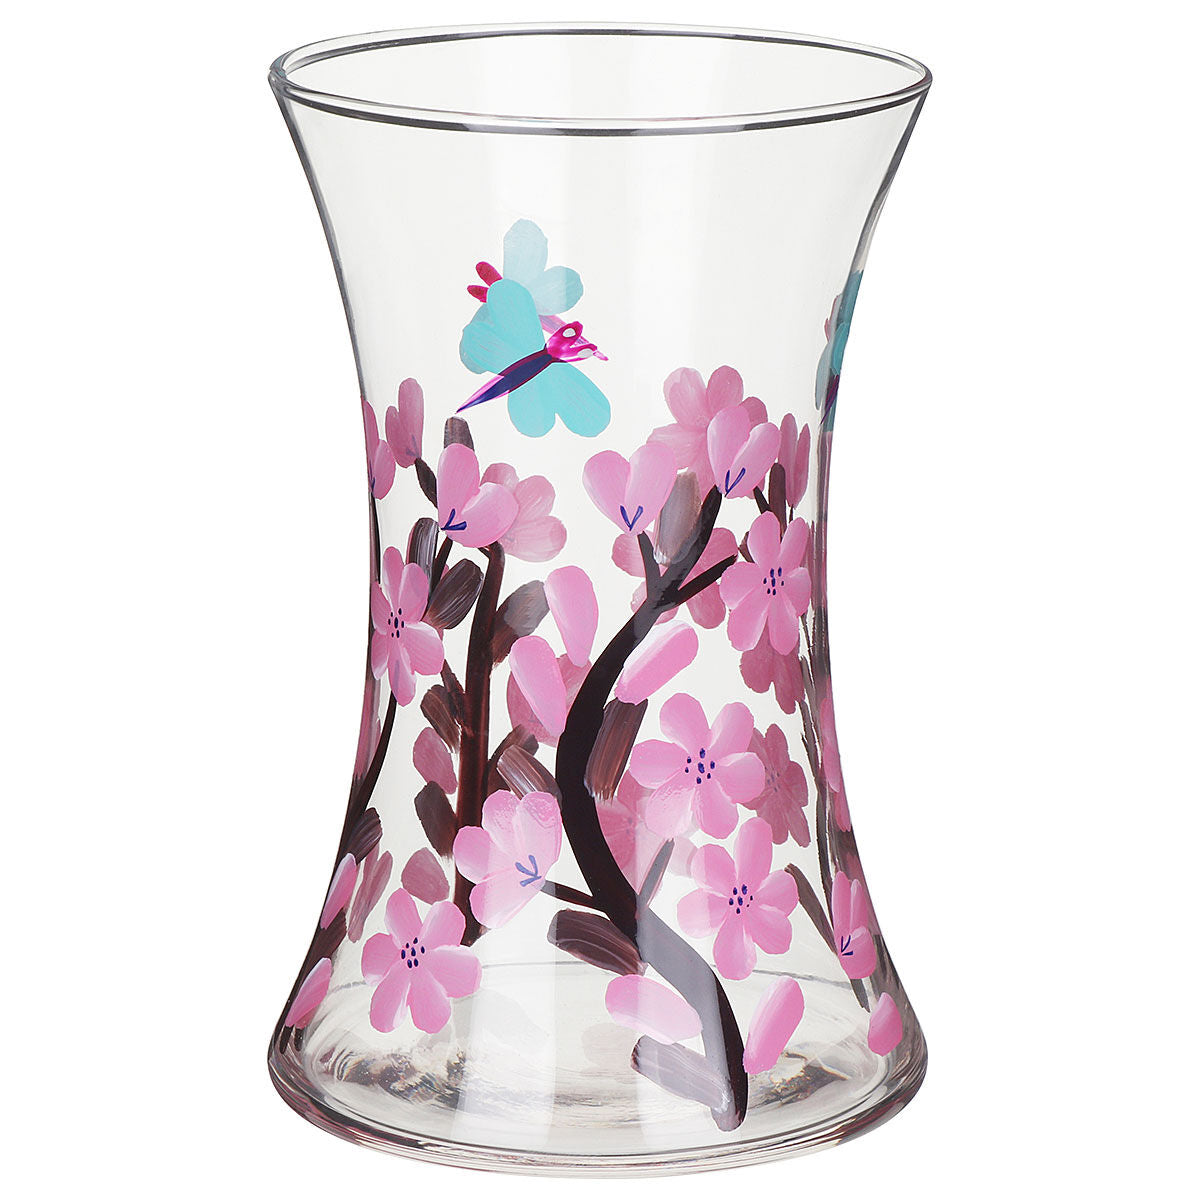 Blossom & Dragonfly Glass Vase